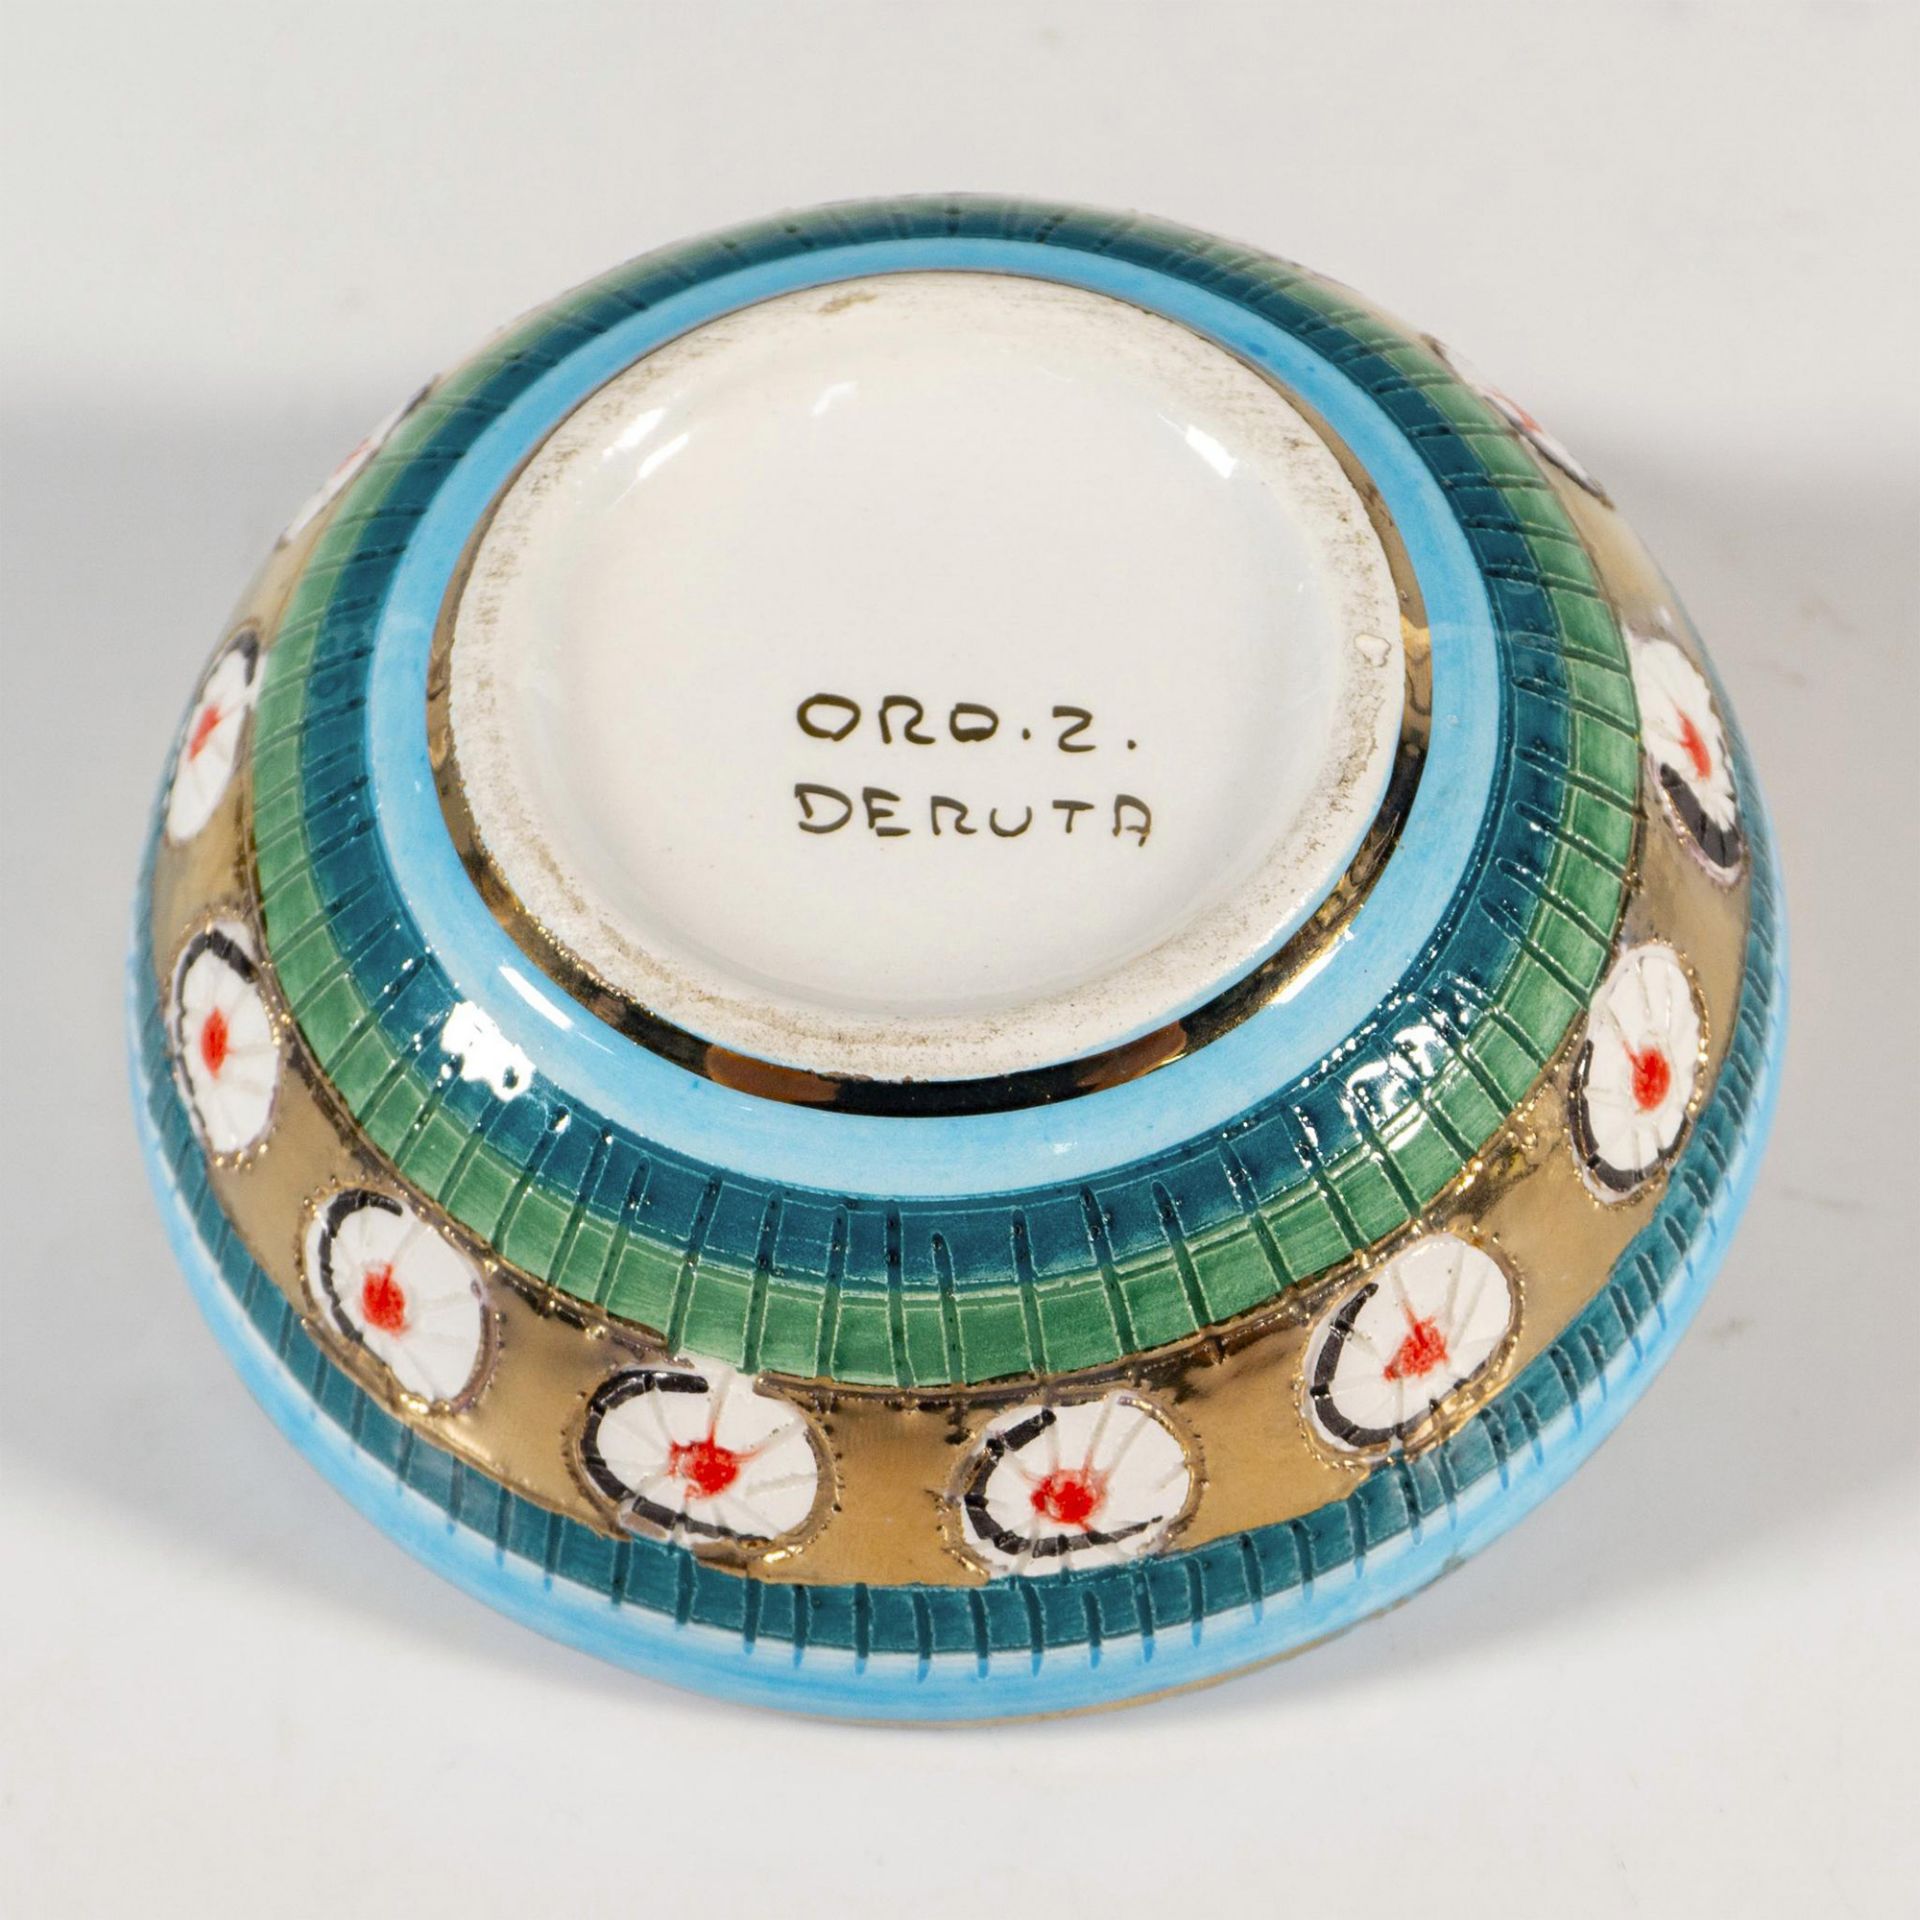 Vintage Deruta Italian Ceramic Box - Image 3 of 4